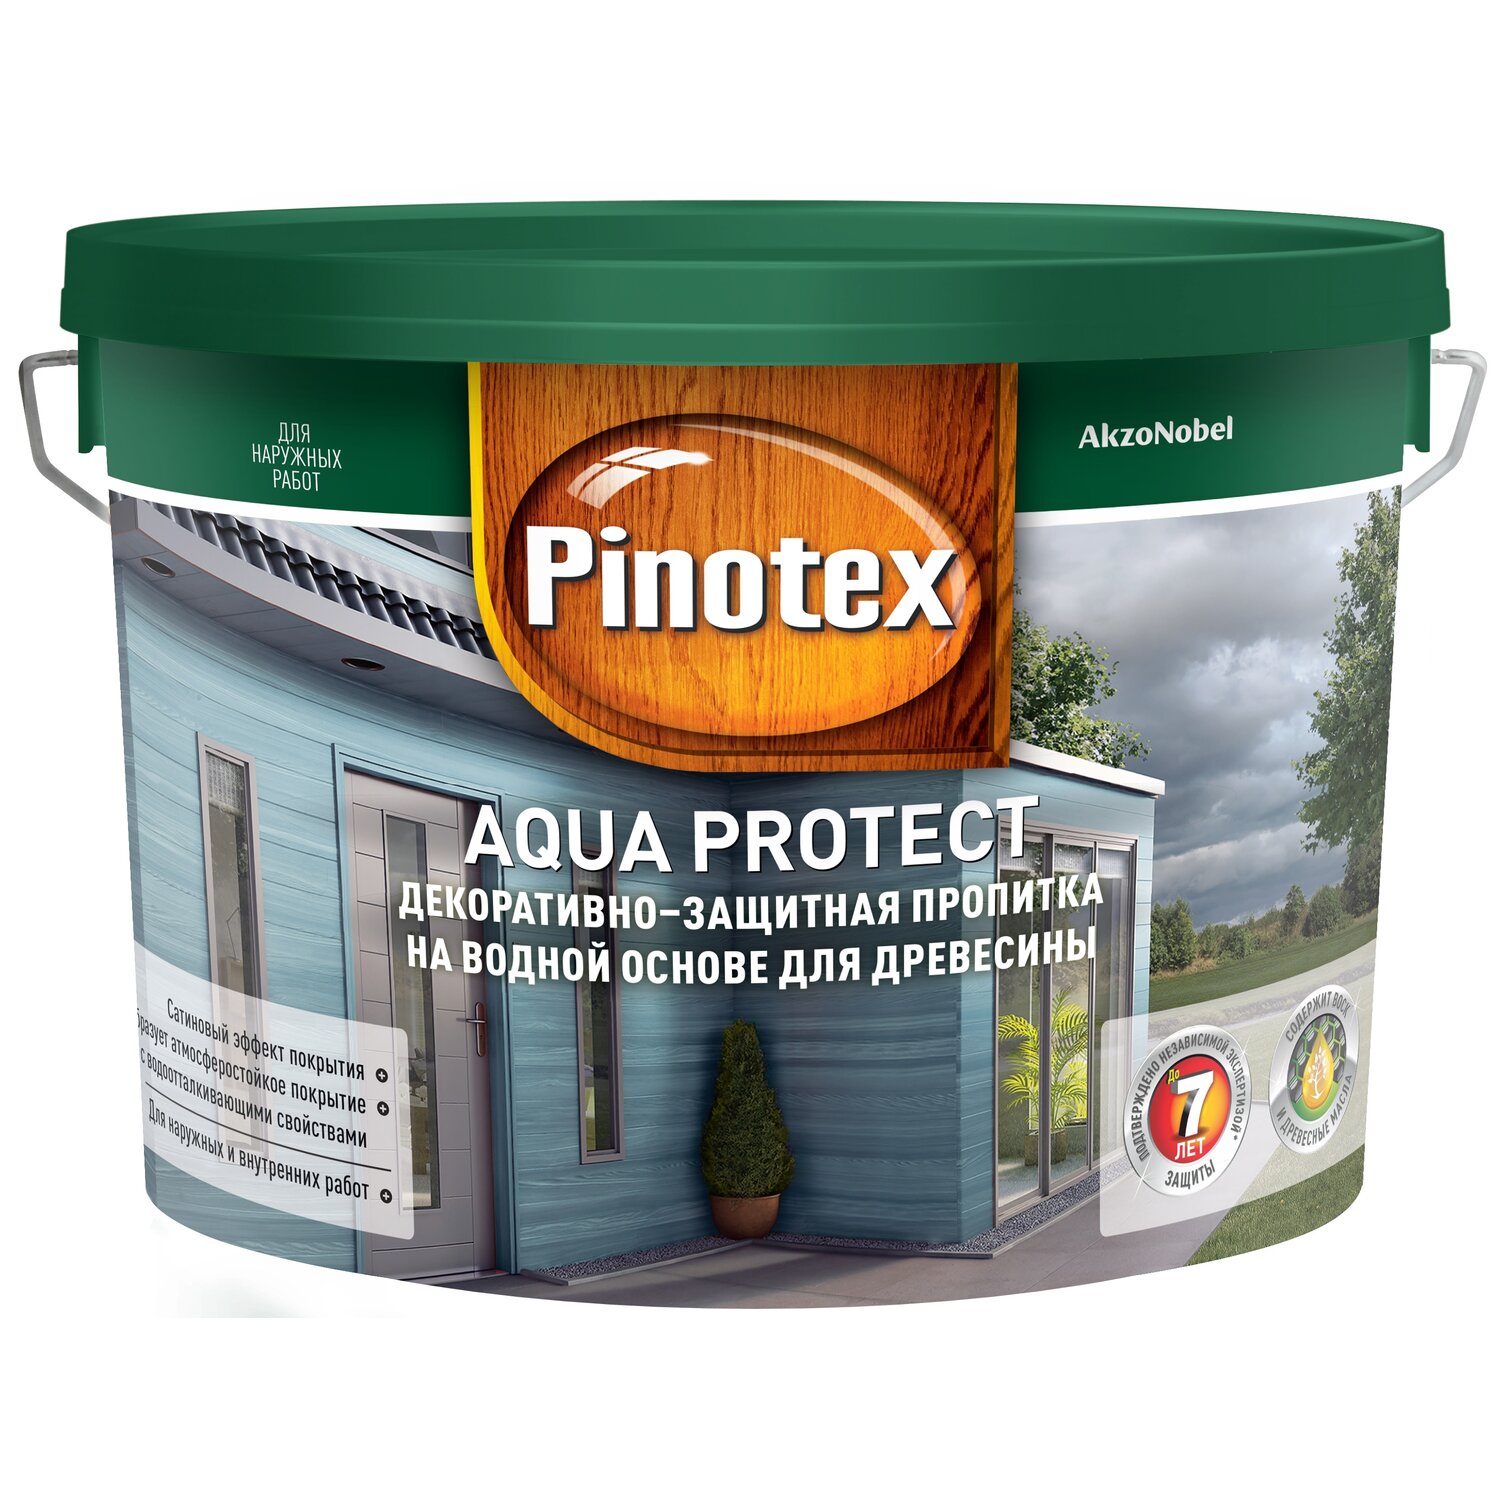 Pinotex Aqua Protect Декоративная пропитка для защиты древесины купить в  интернет-магазине по цене производителя Pinotex